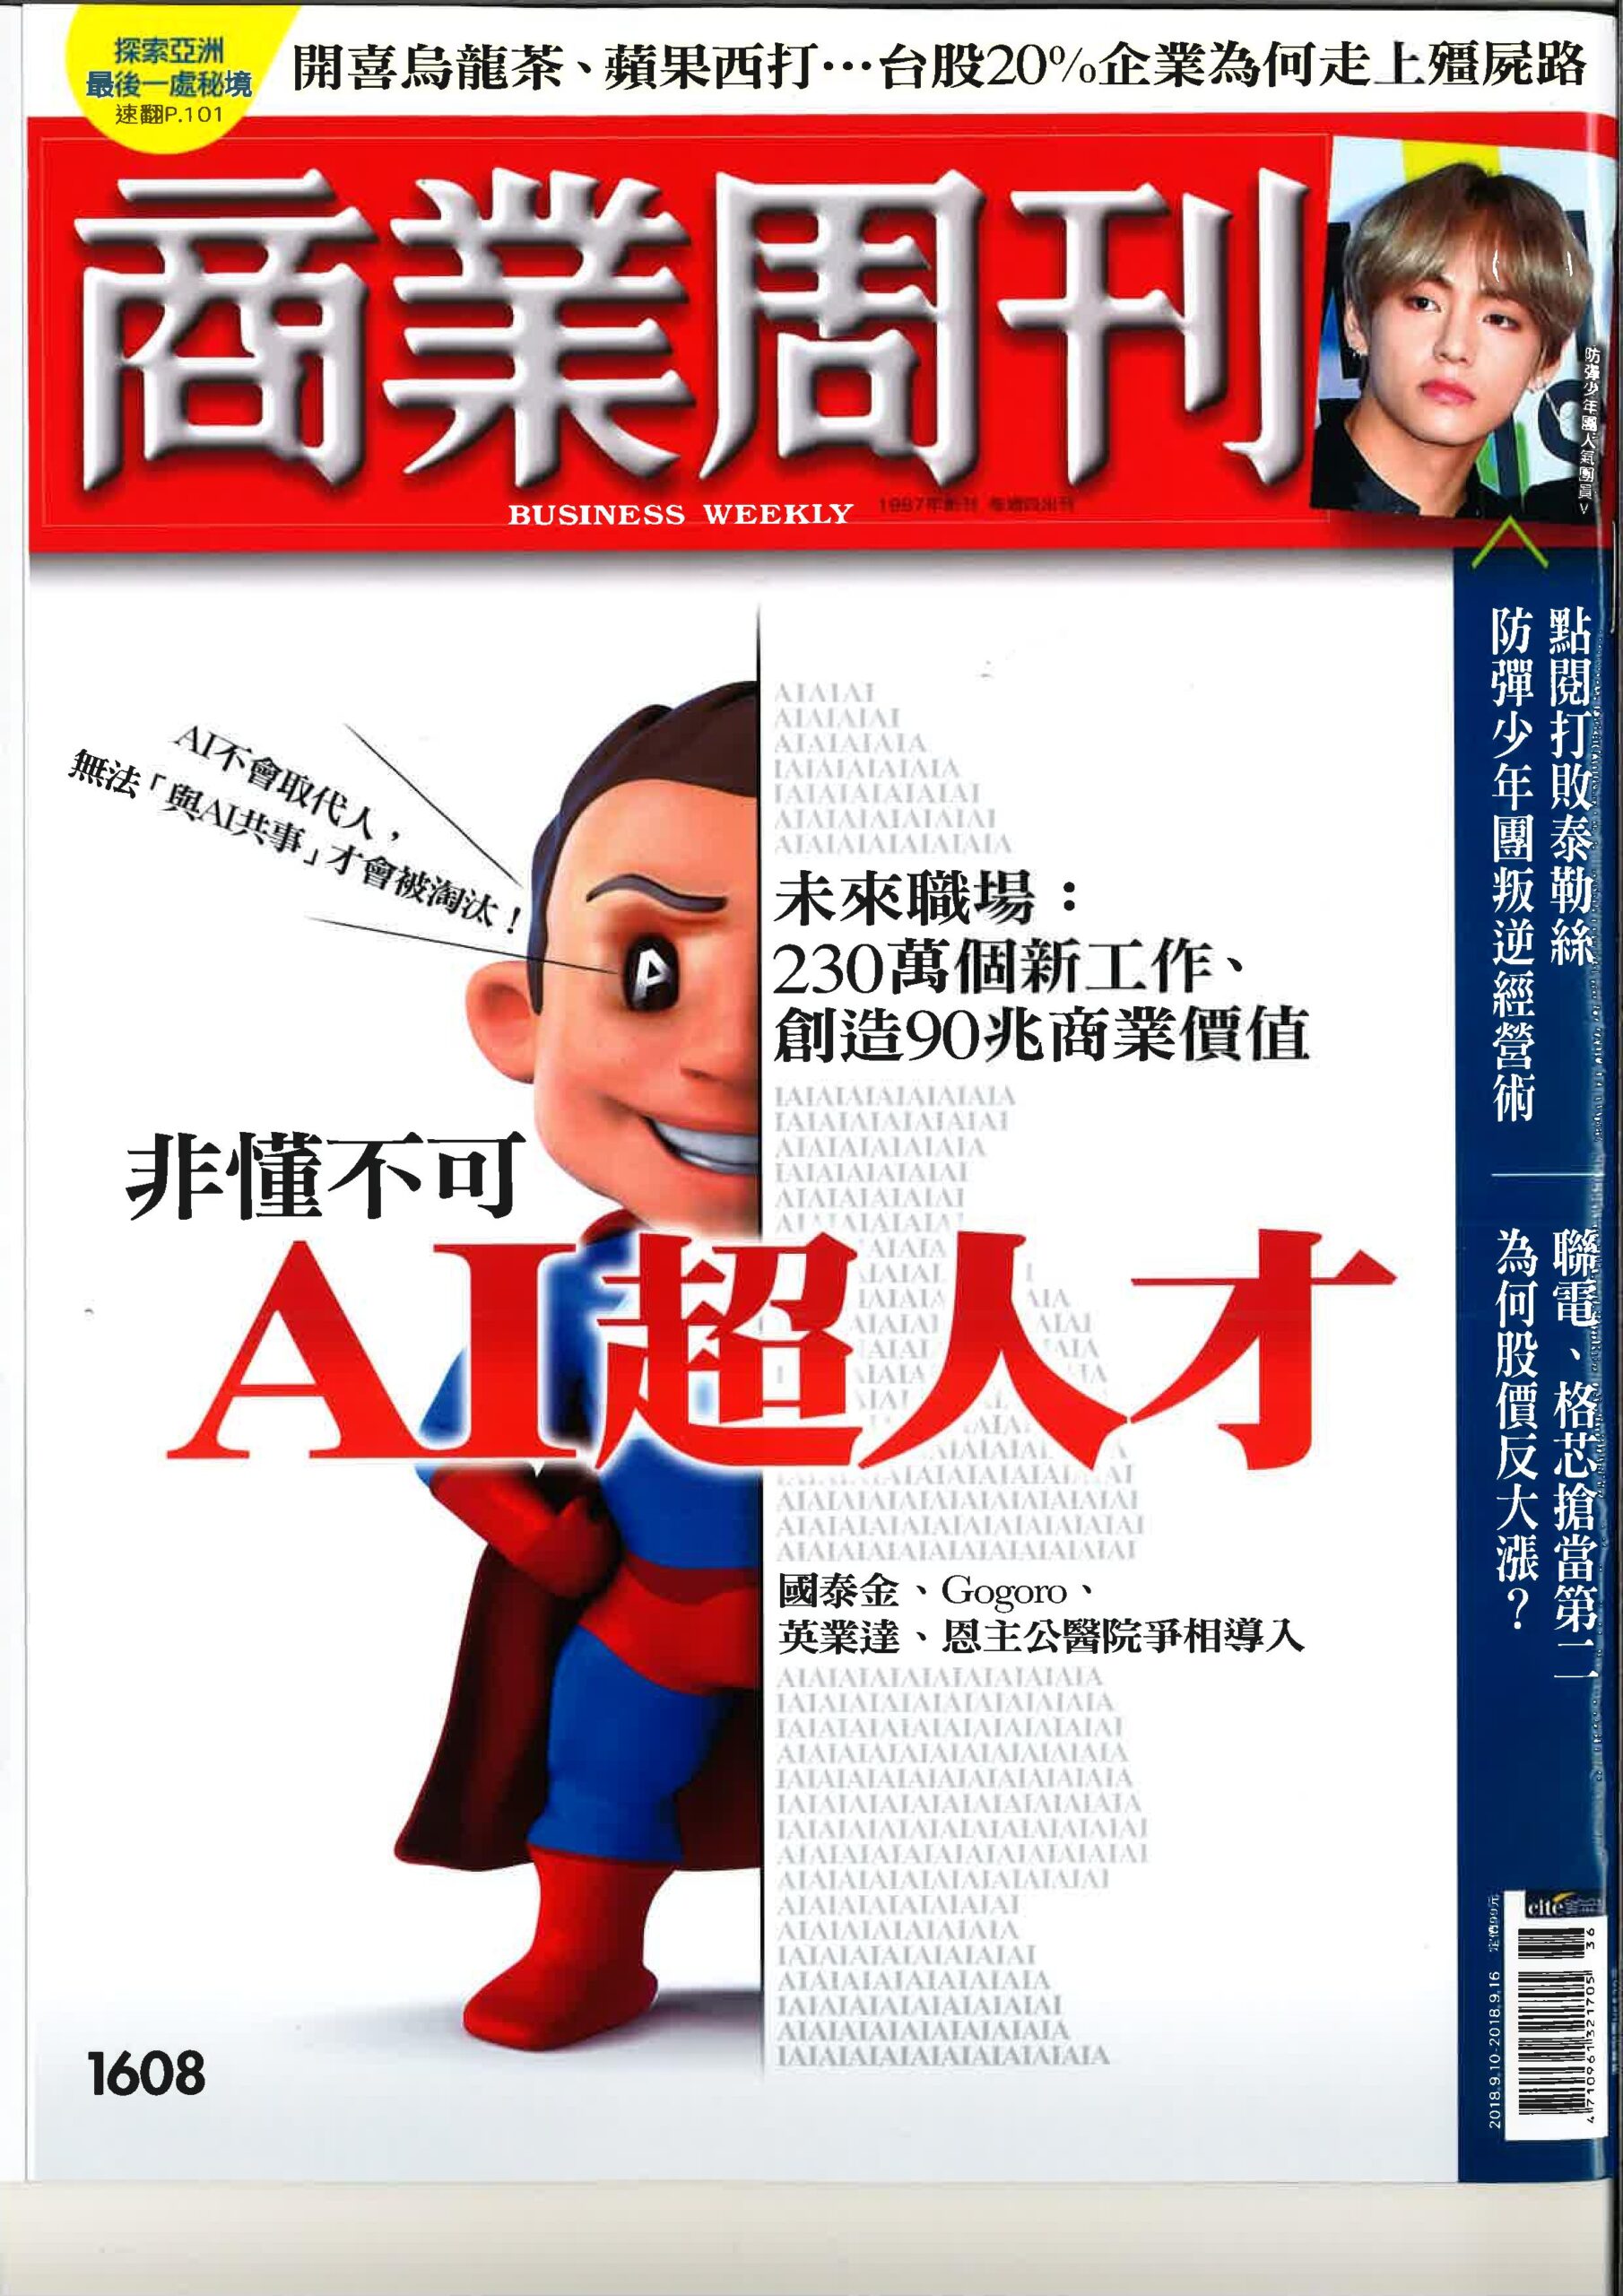 商業周刊No.1608-AI超人才-page-001